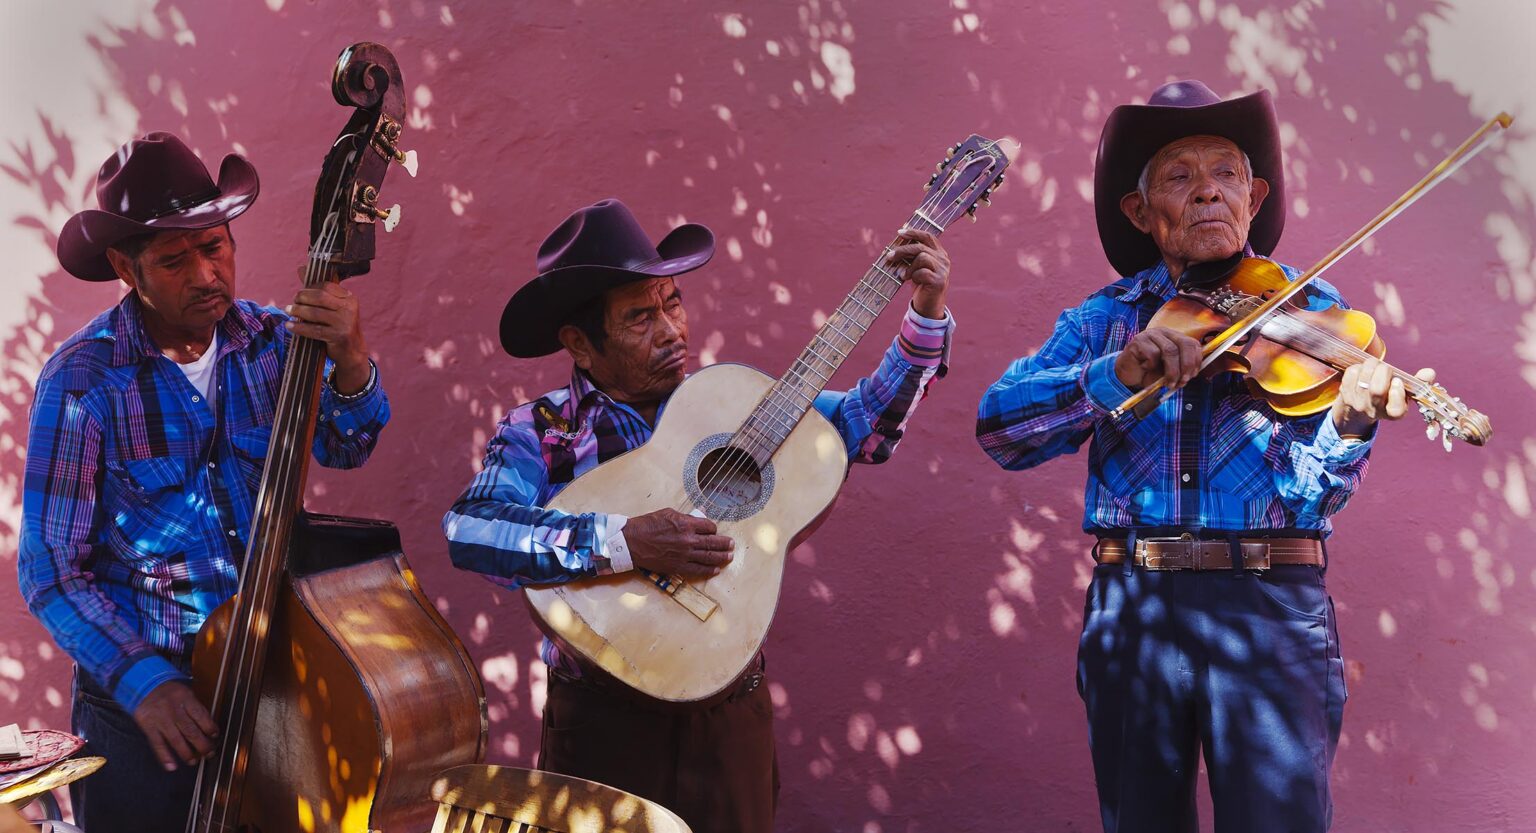 MEXICAN STREET MUSICIANS preforming -  SAN MIGUEL DE ALLENDE, MEXICO